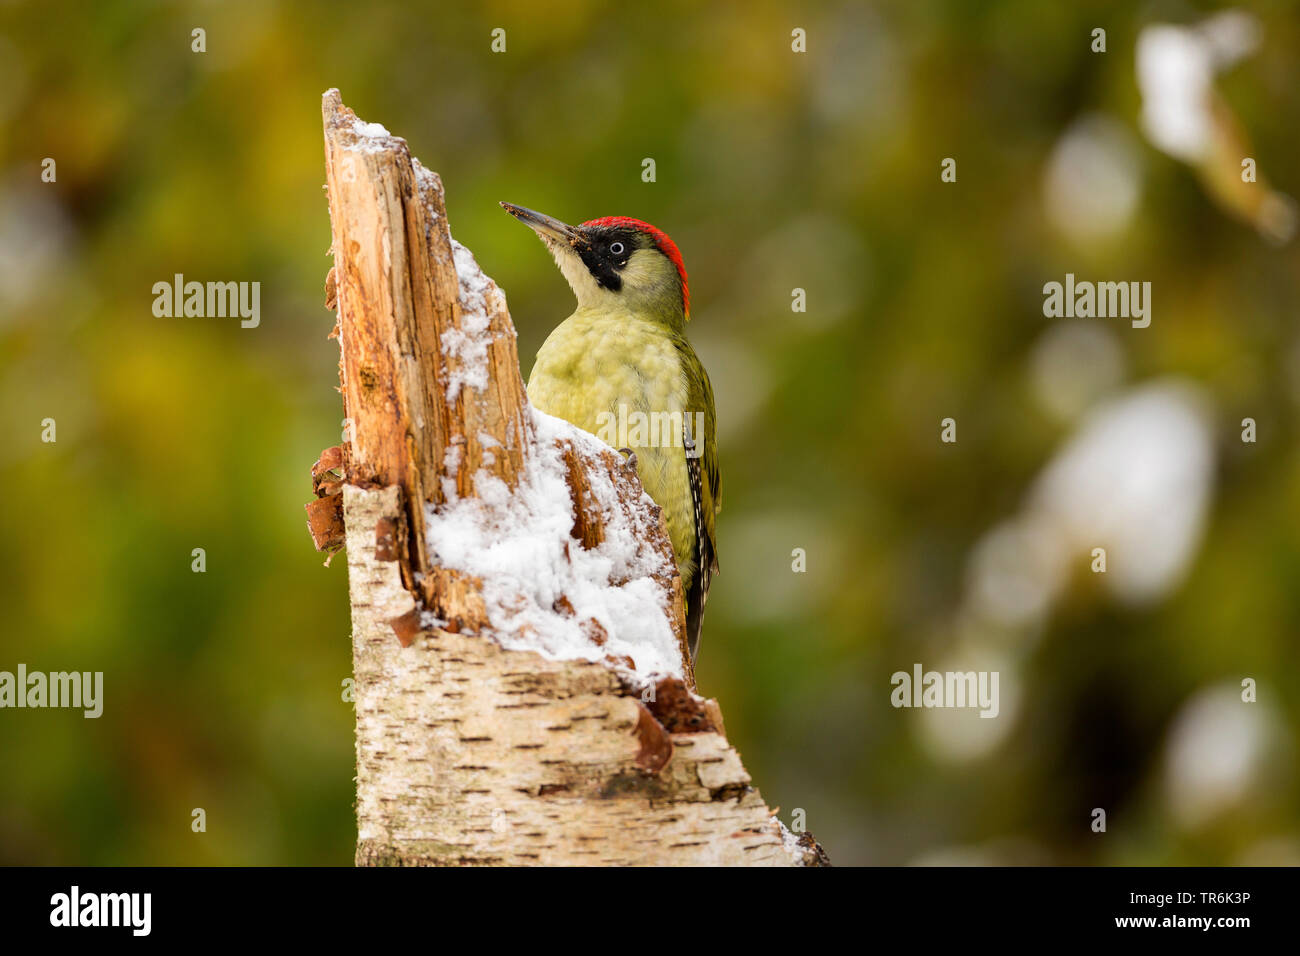 Pájaro carpintero verde (Picus viridis), sentado sobre un árbol snag en invierno, Alemania Foto de stock